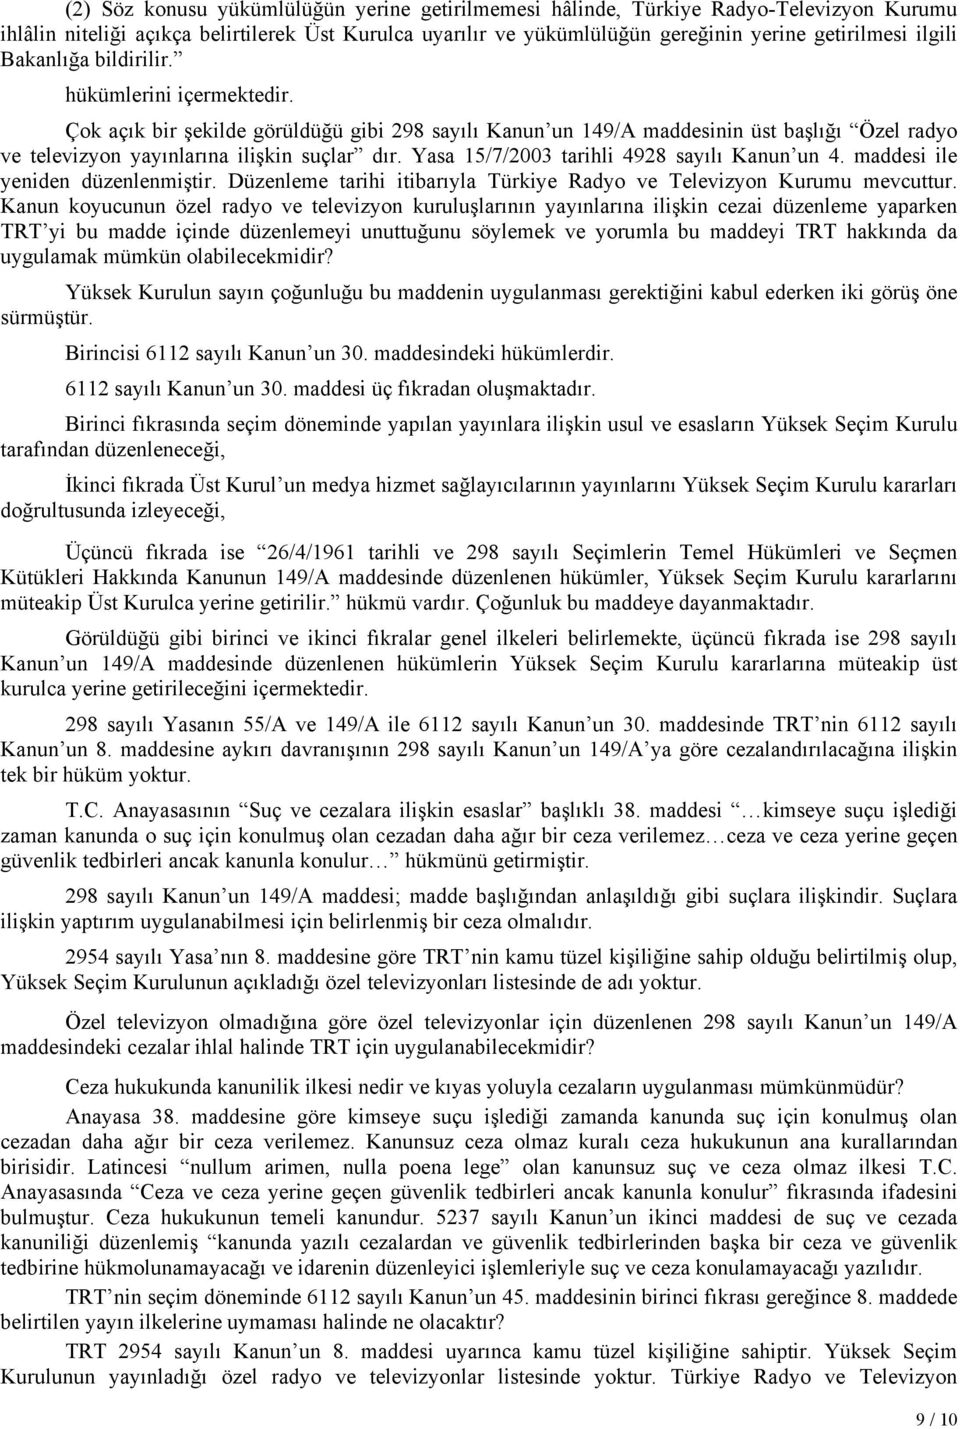 Yasa 15/7/2003 tarihli 4928 sayılı Kanun un 4. maddesi ile yeniden düzenlenmiştir. Düzenleme tarihi itibarıyla Türkiye Radyo ve Televizyon Kurumu mevcuttur.